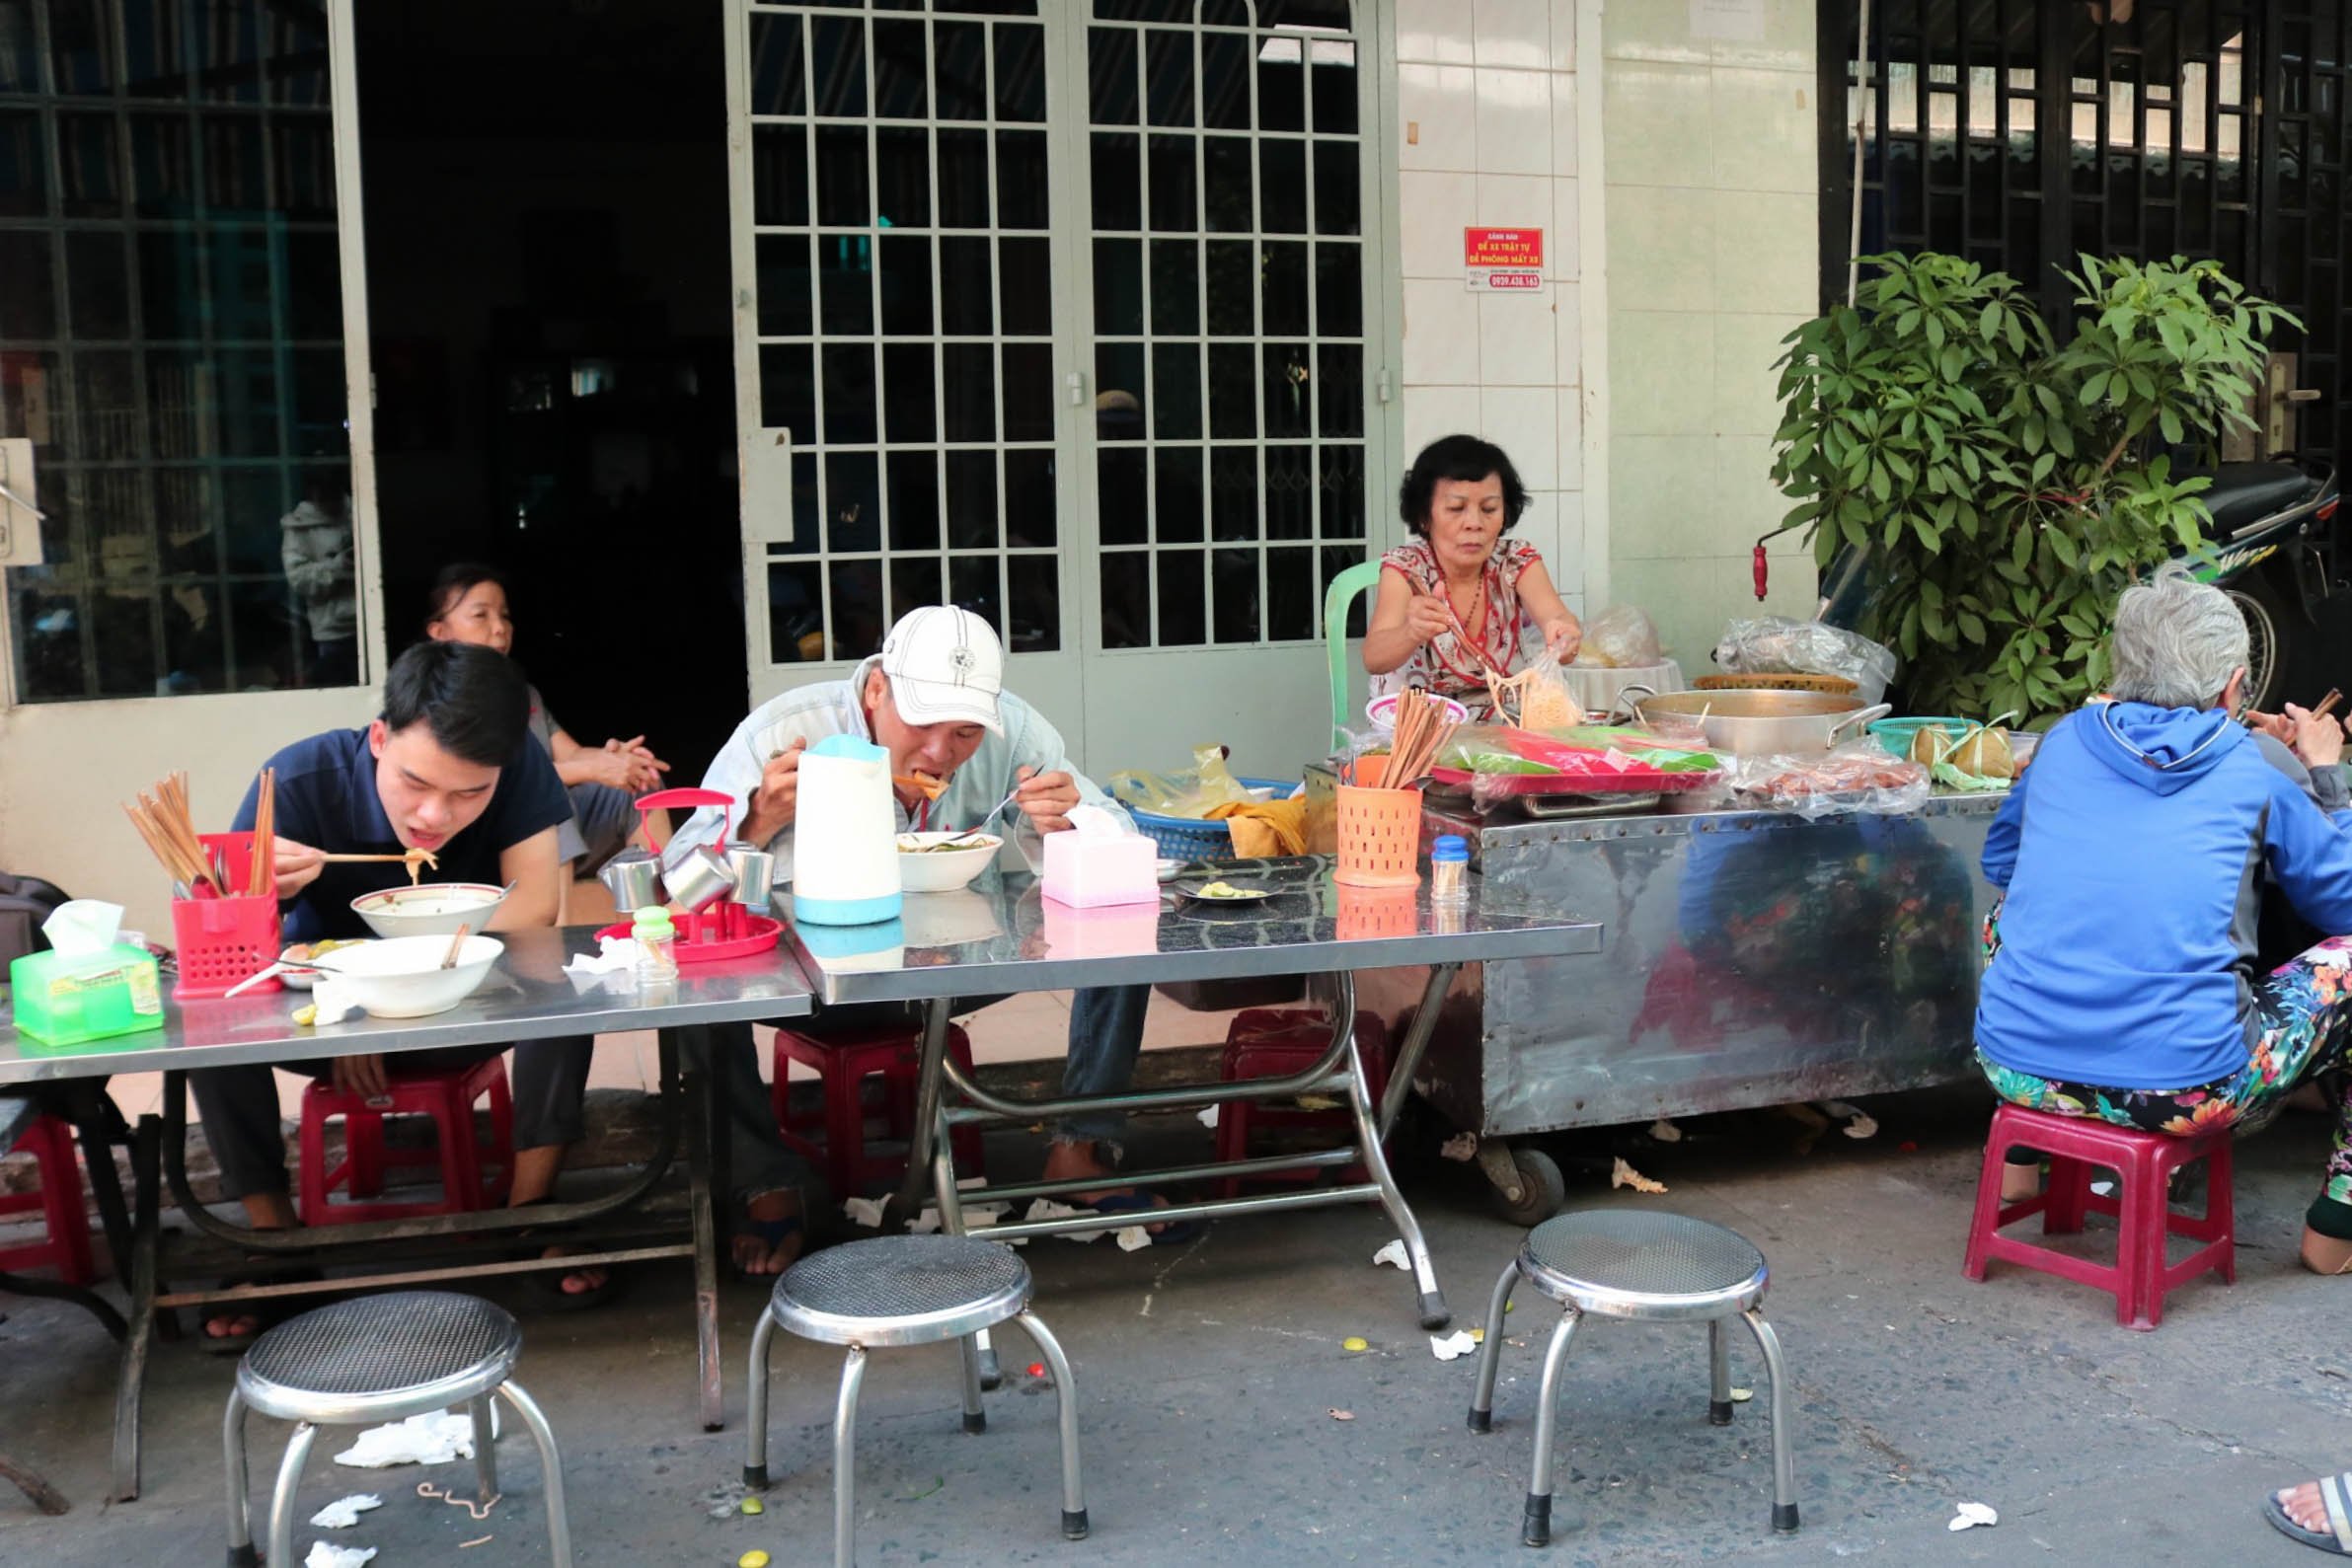 Quán canh bún ‘hẻm núp hẻm’ Sài Gòn chỉ bán 3 tiếng, khách ‘muốn gì được nấy’